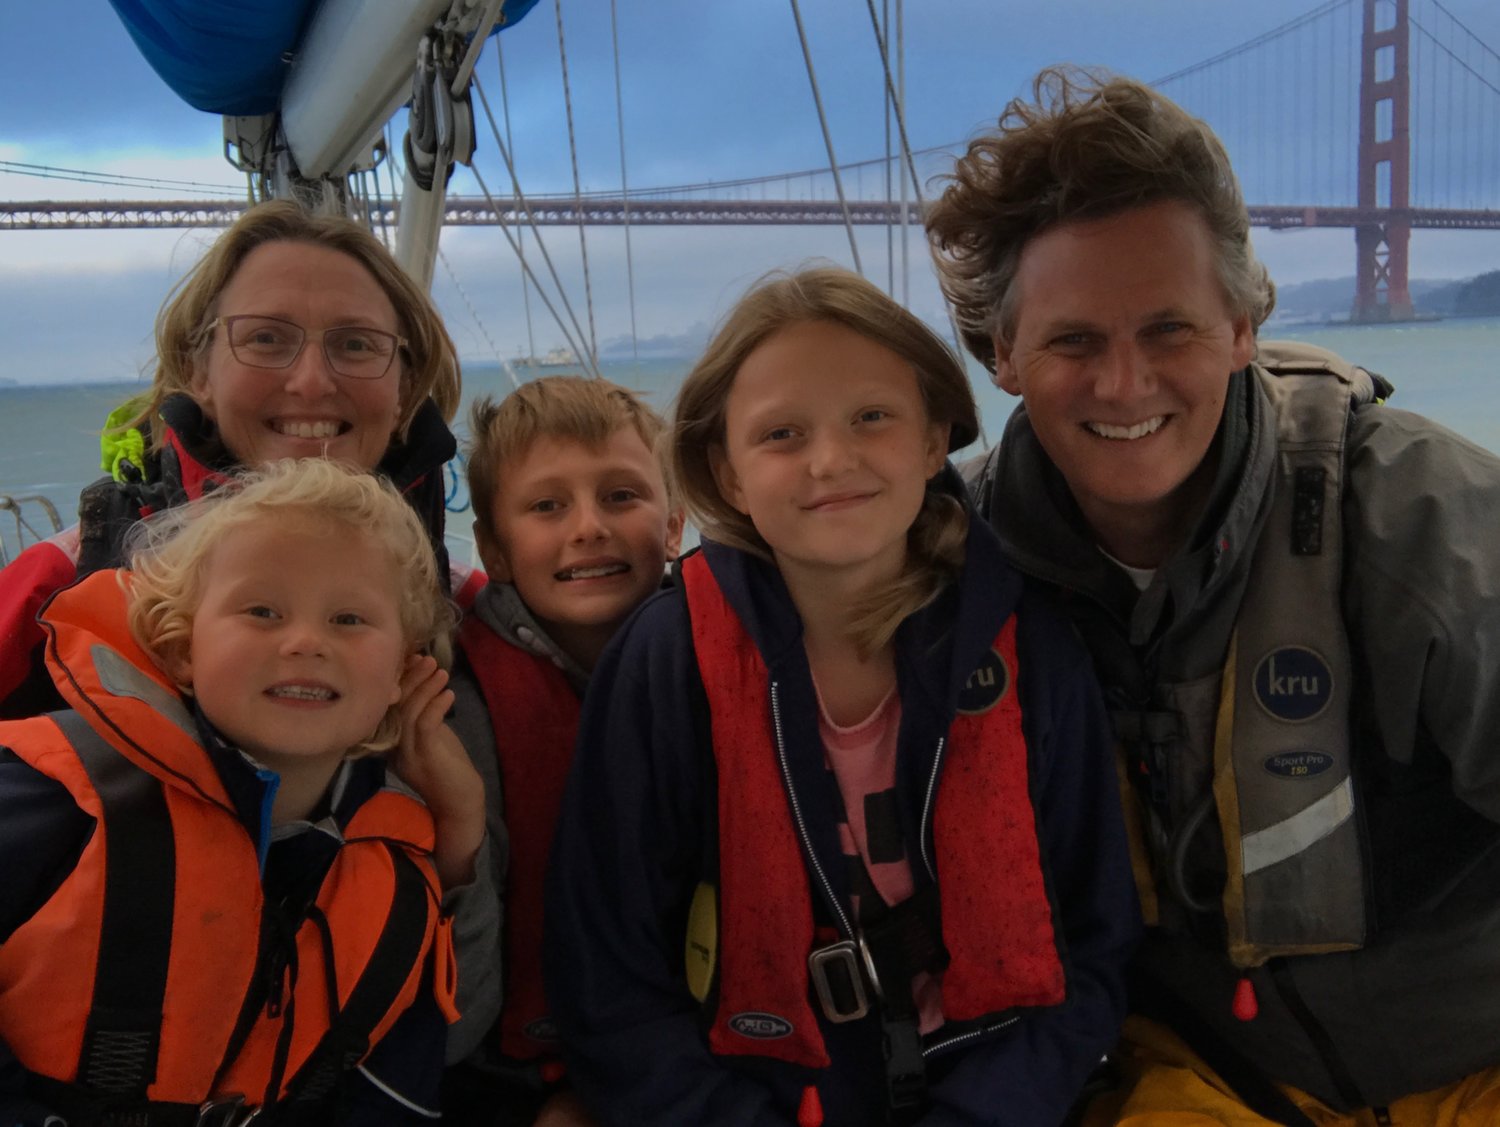 Кругосветное путешествие детей. Кругосветное путешествие с семьей. Кругосветное путешествие на яхте с детьми. Яхтинг для детей. Семейная кругосветка картинка.